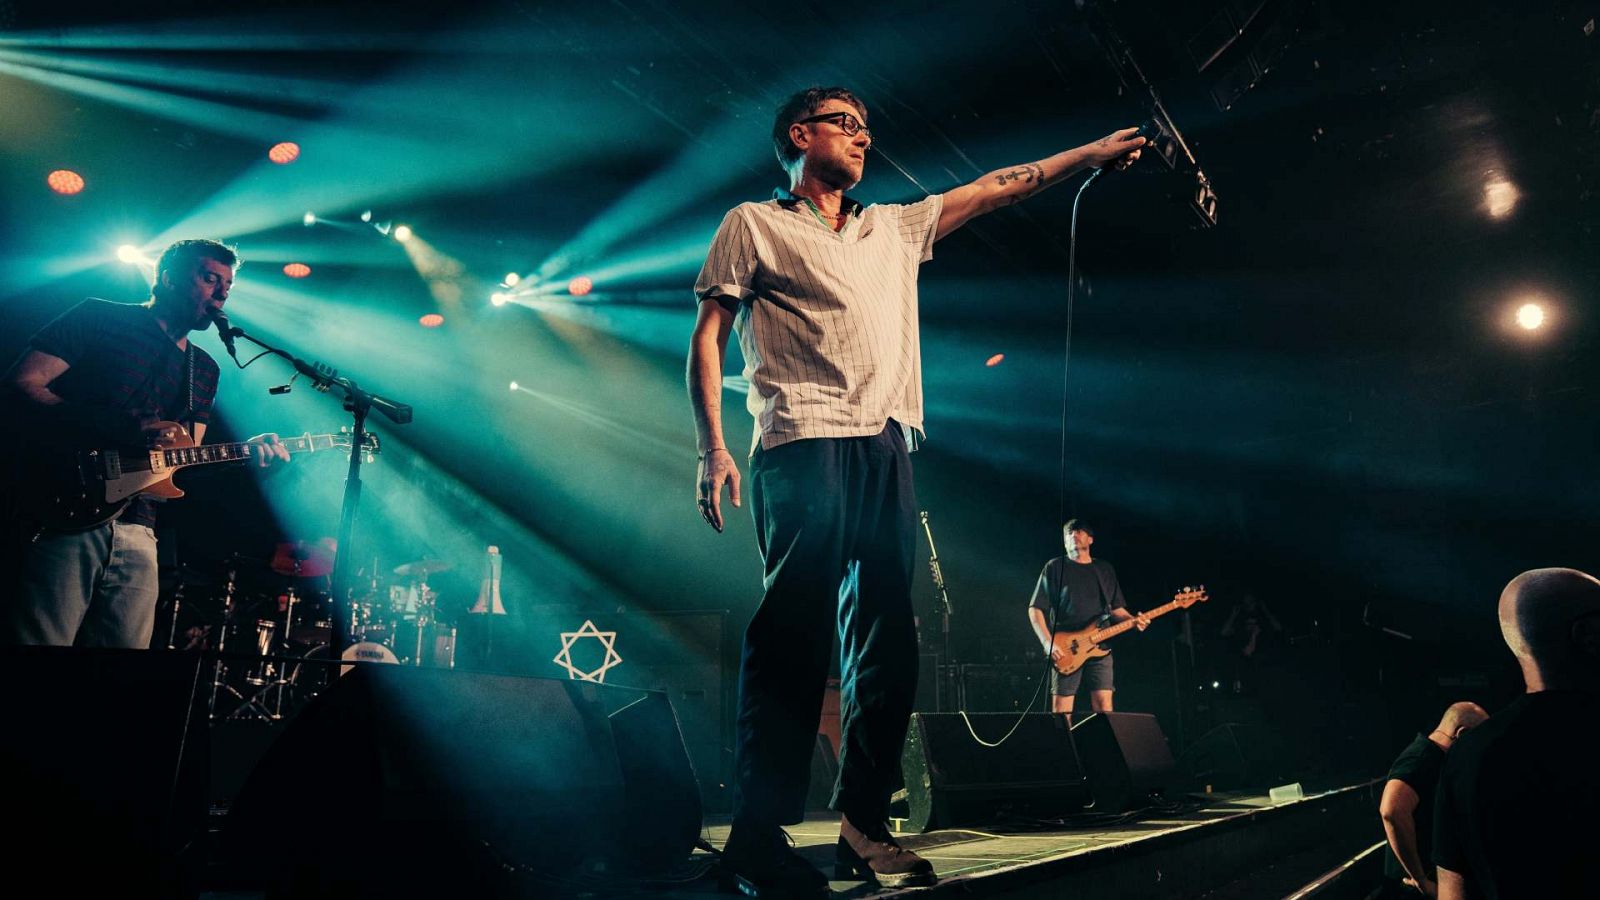 La banda británica Blur en el concierto de La Riviera en Madrid tras la cancelación de la primera jornada del Primavera Sound en Madrid.